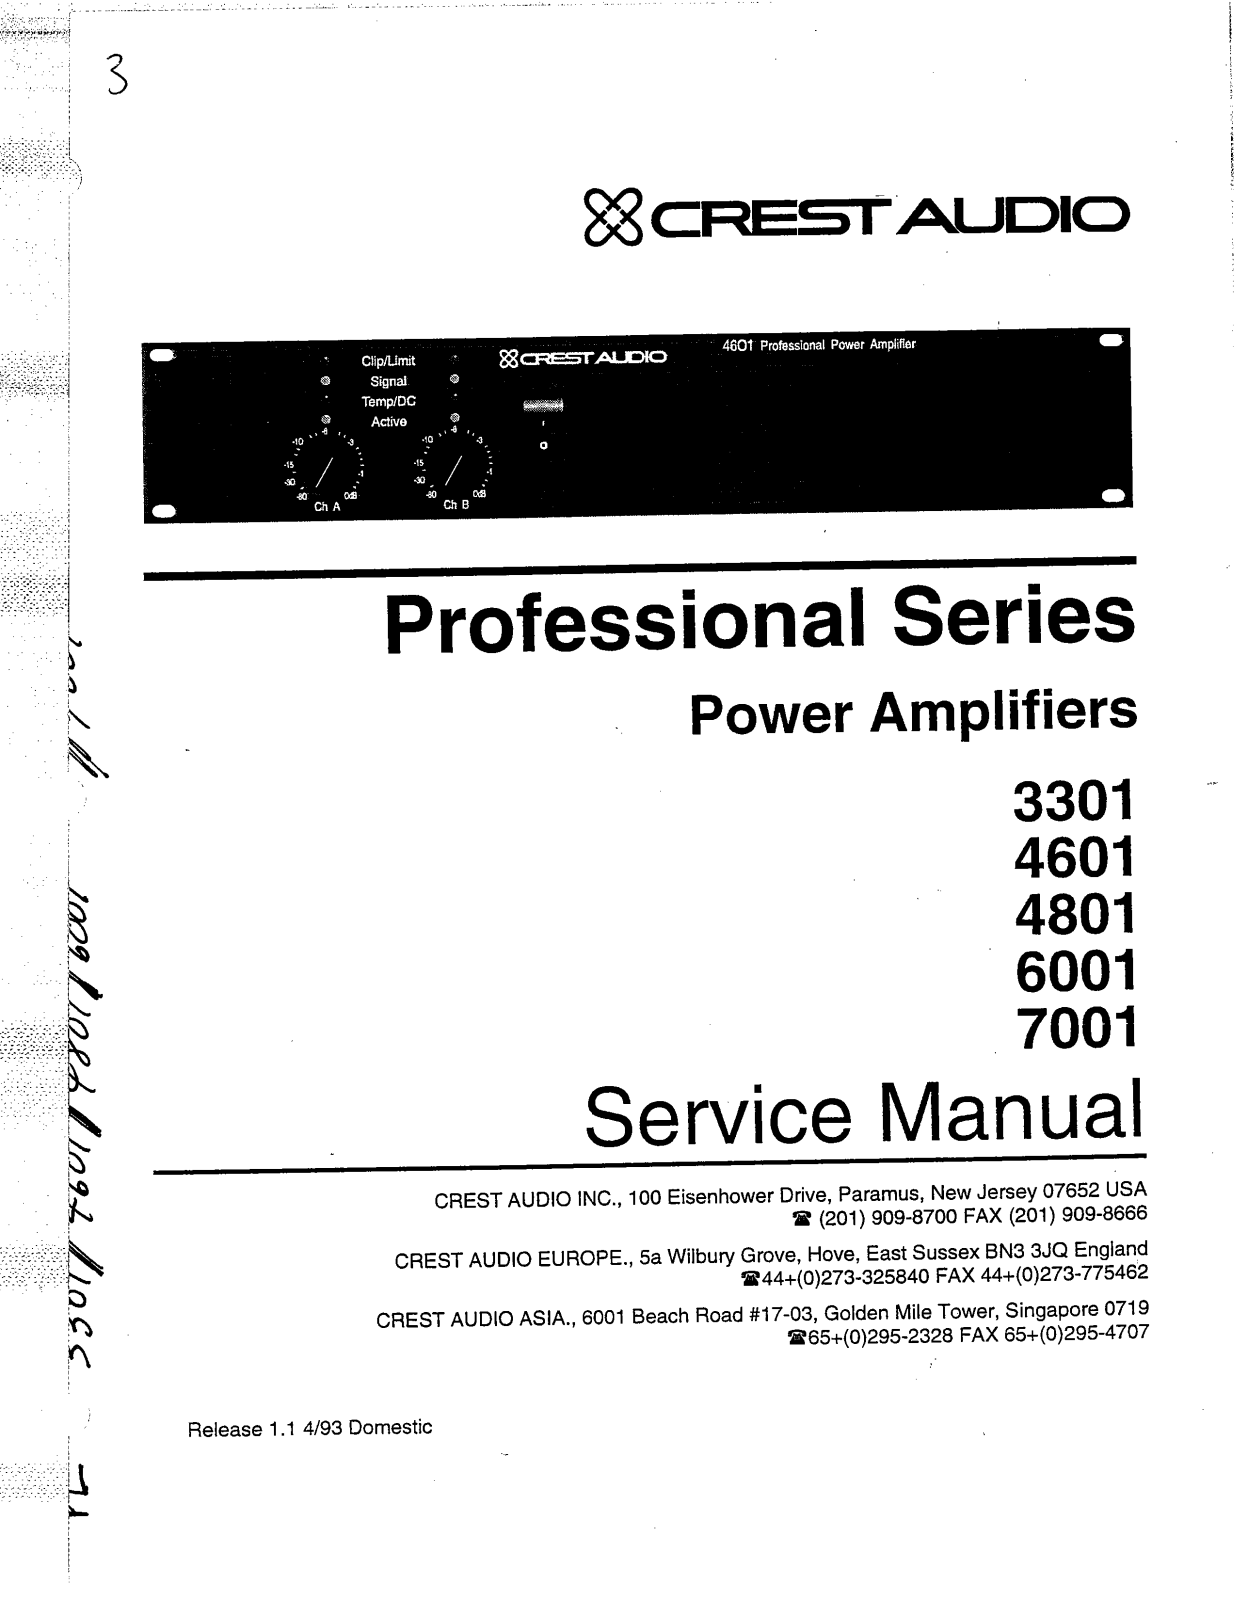 Crest Audio 6001, 4801, 4601, 7001 Service Manual